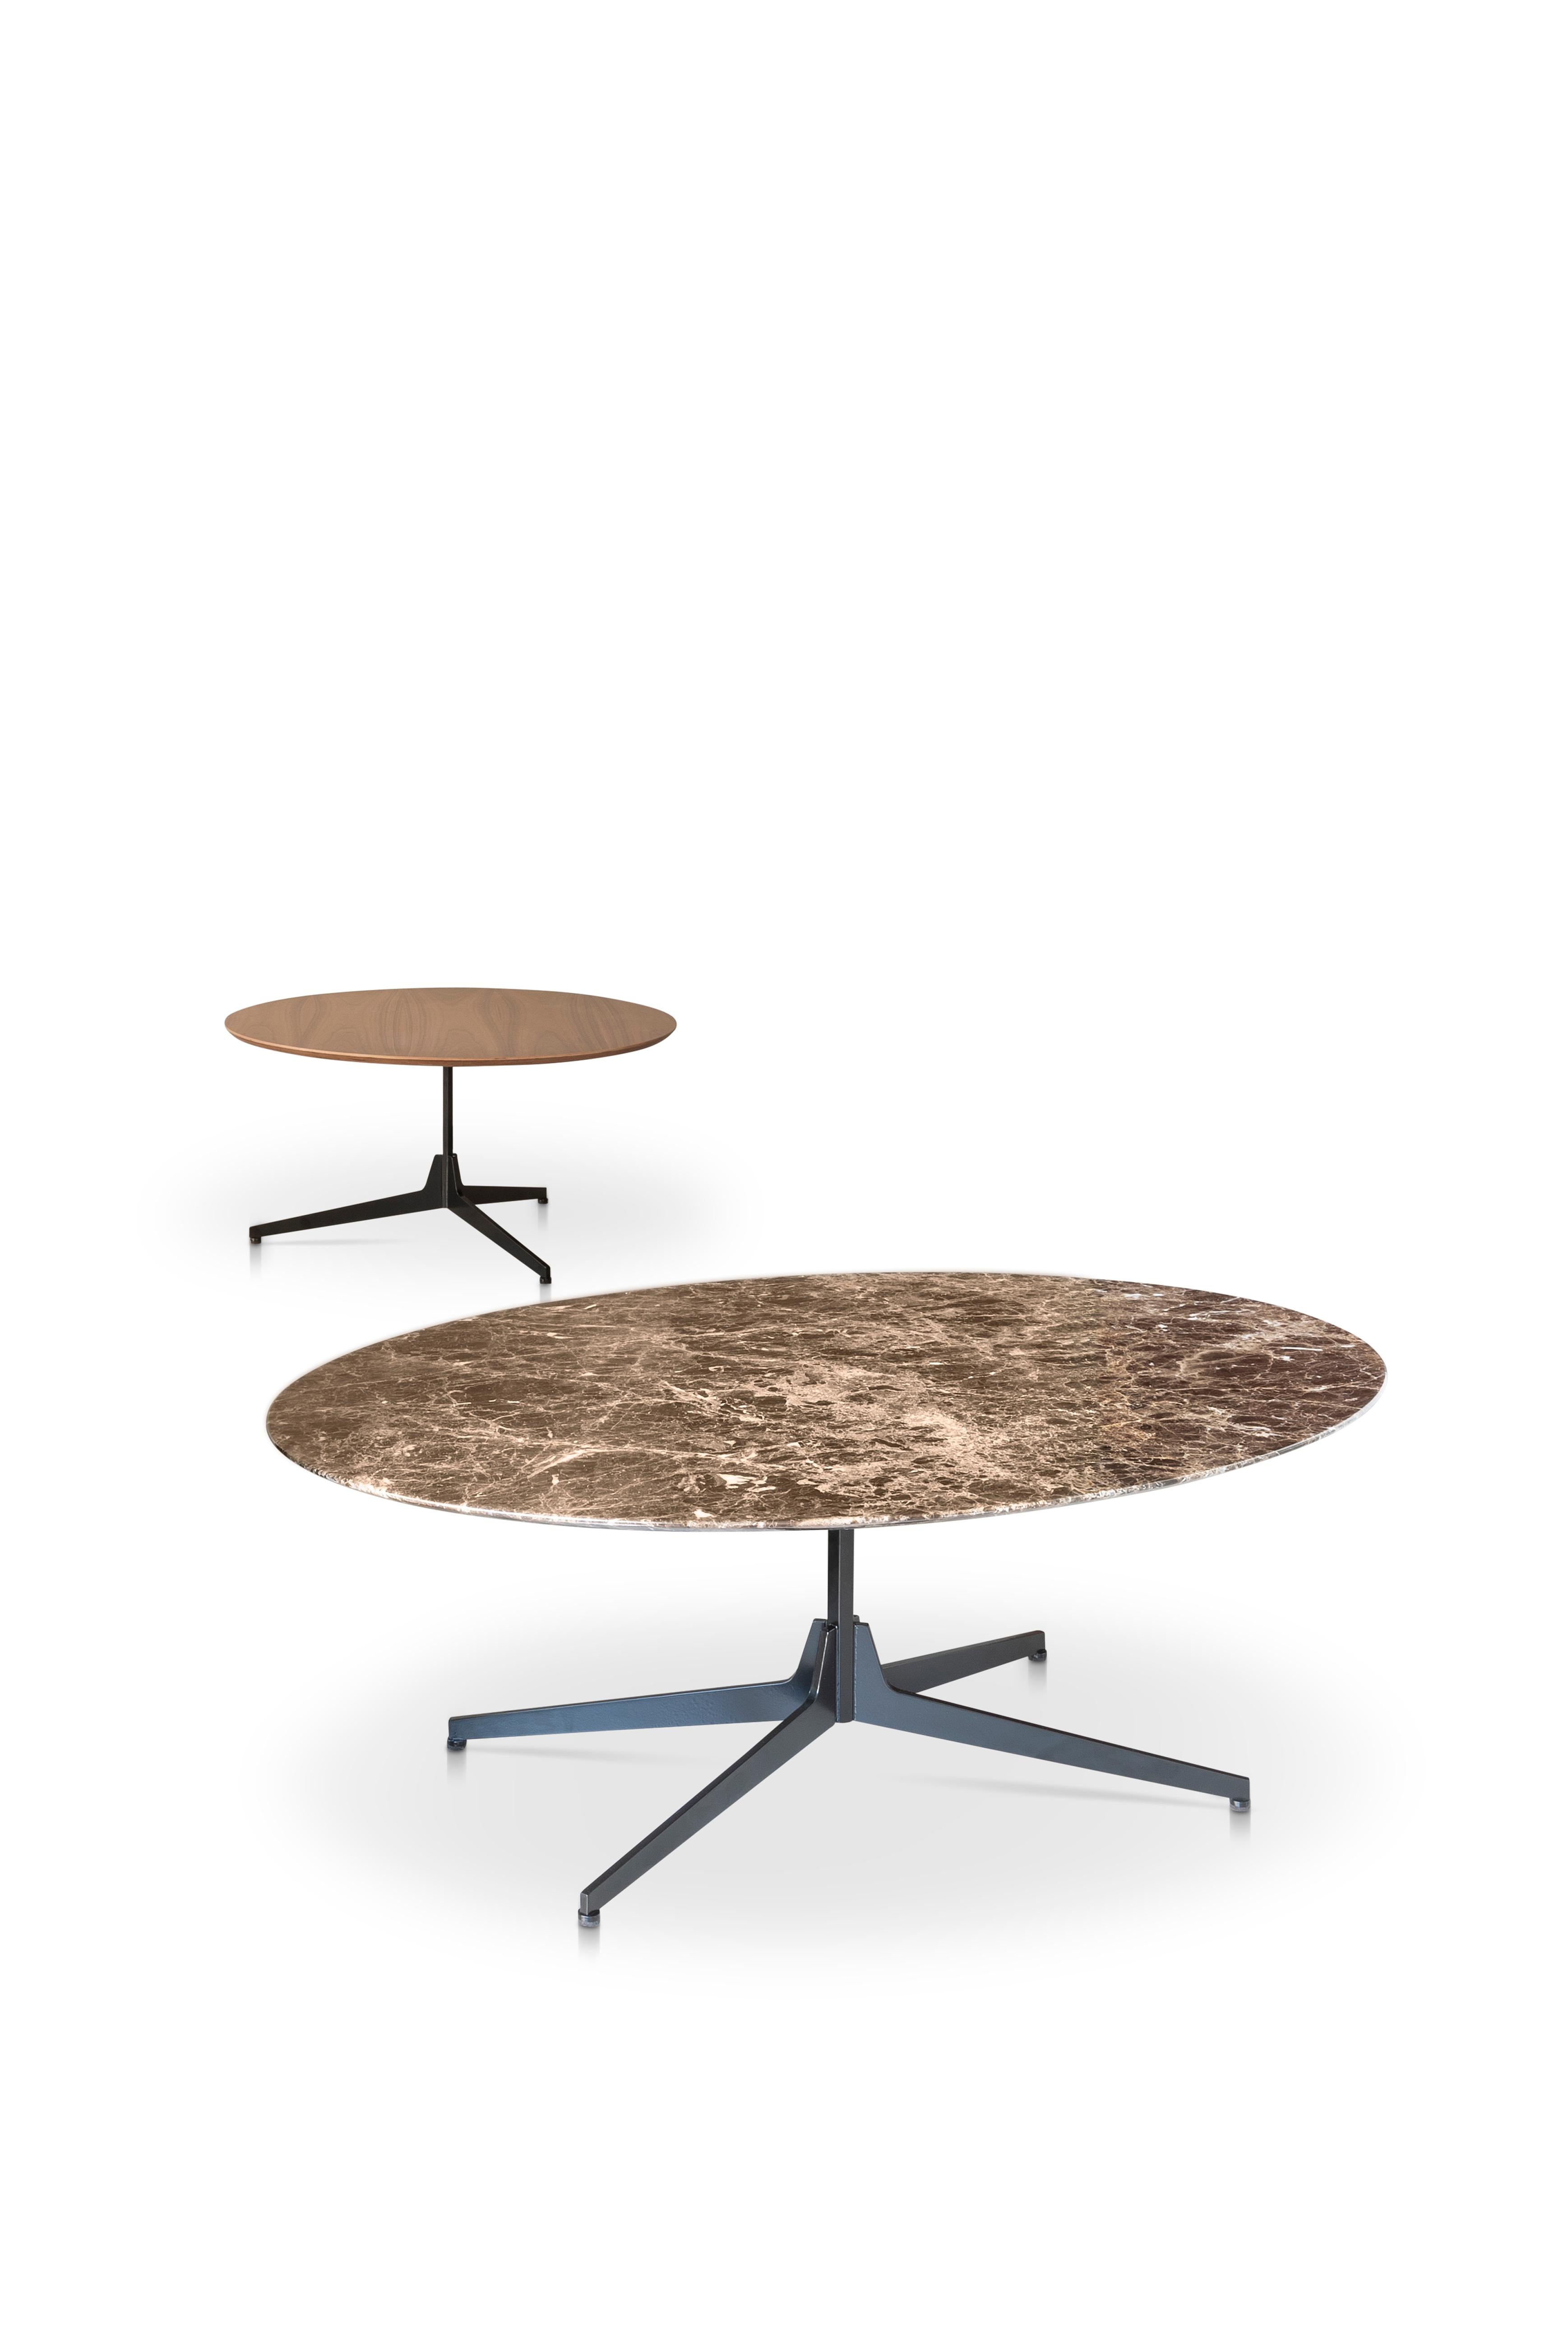 Moderne Table basse ovale Hexa avec plateau en marbre blanc de Carrare et base noire mate, Enzo Berti en vente